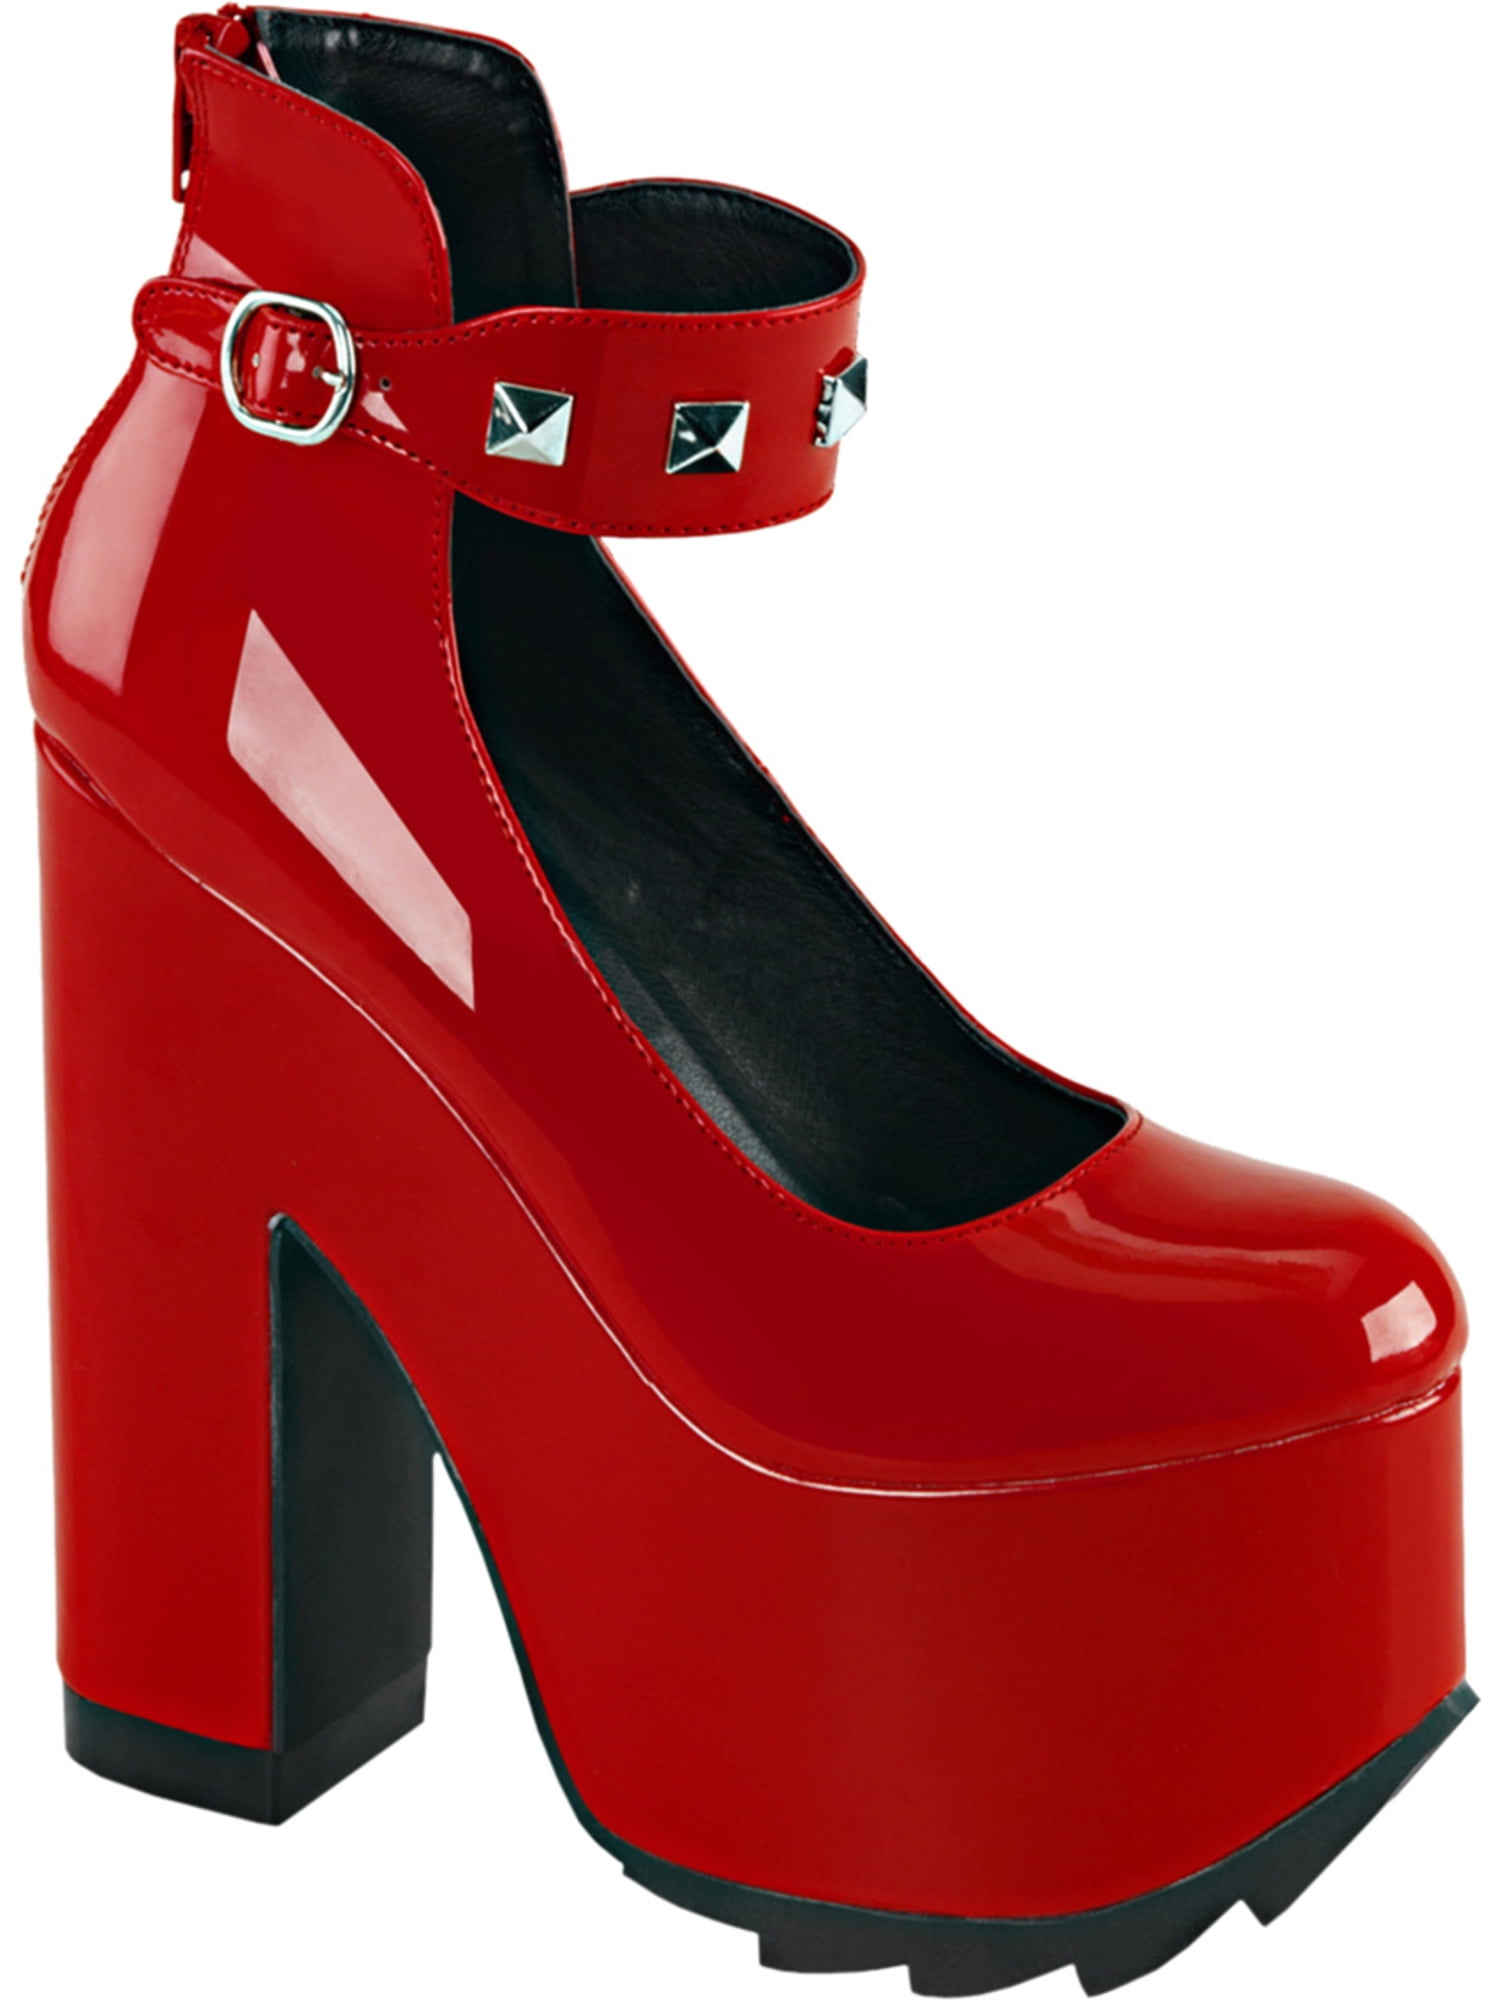 6 inch block heels